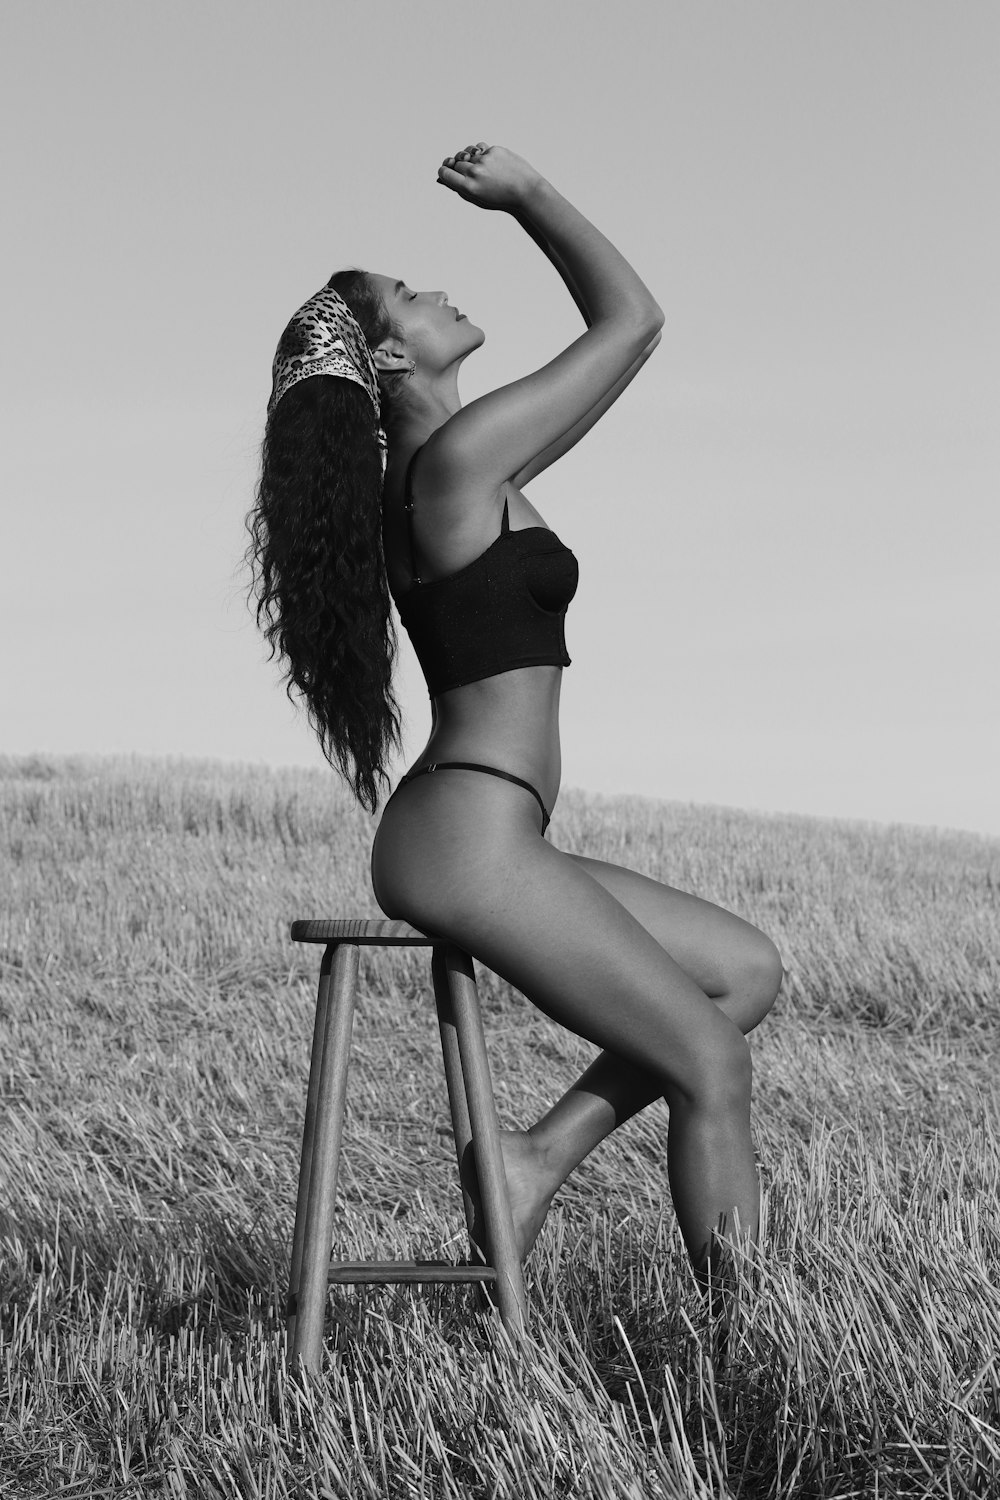 woman in black bikini sitting on chair